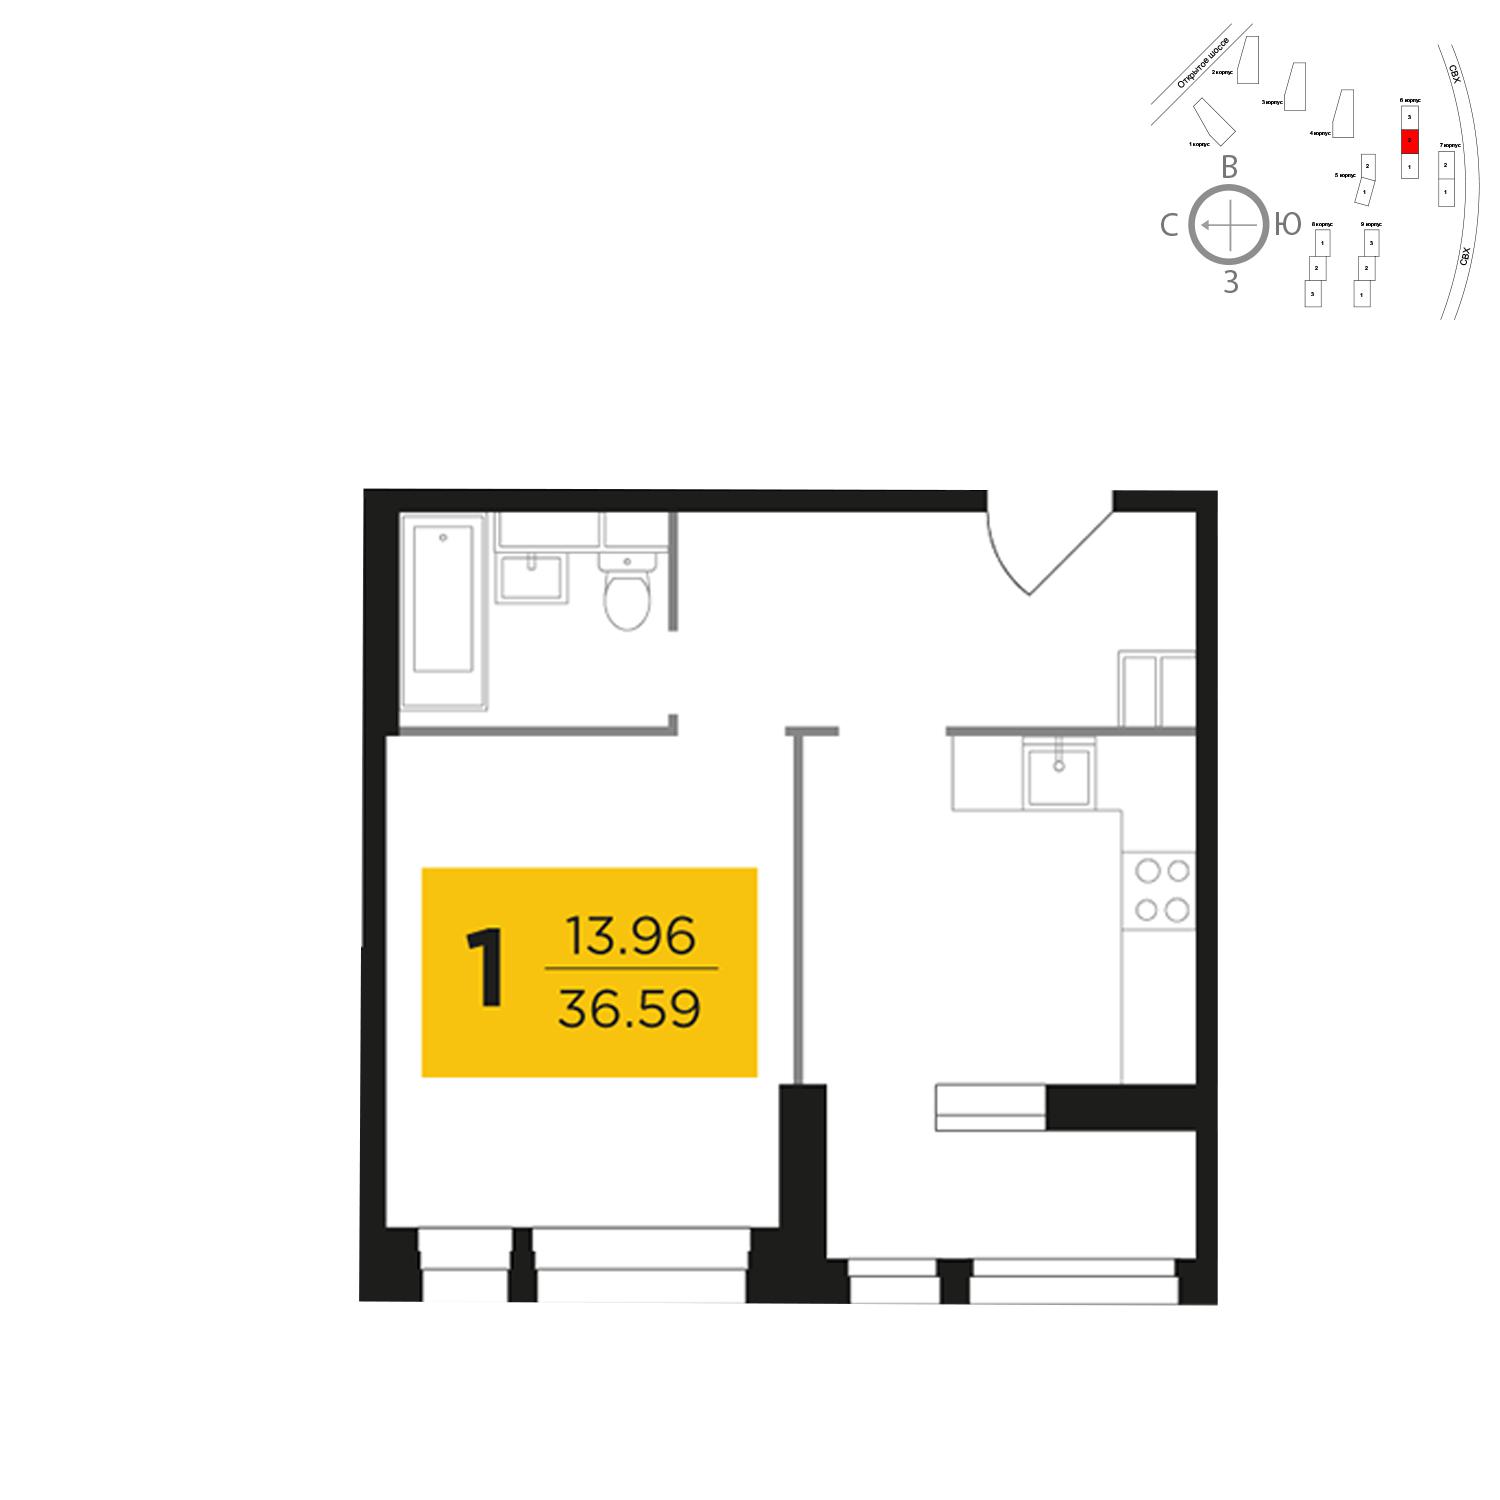 Продаётся 1-комнатная квартира в новостройке 36.6 кв.м. этаж 9/22 за 10 822 358 руб 